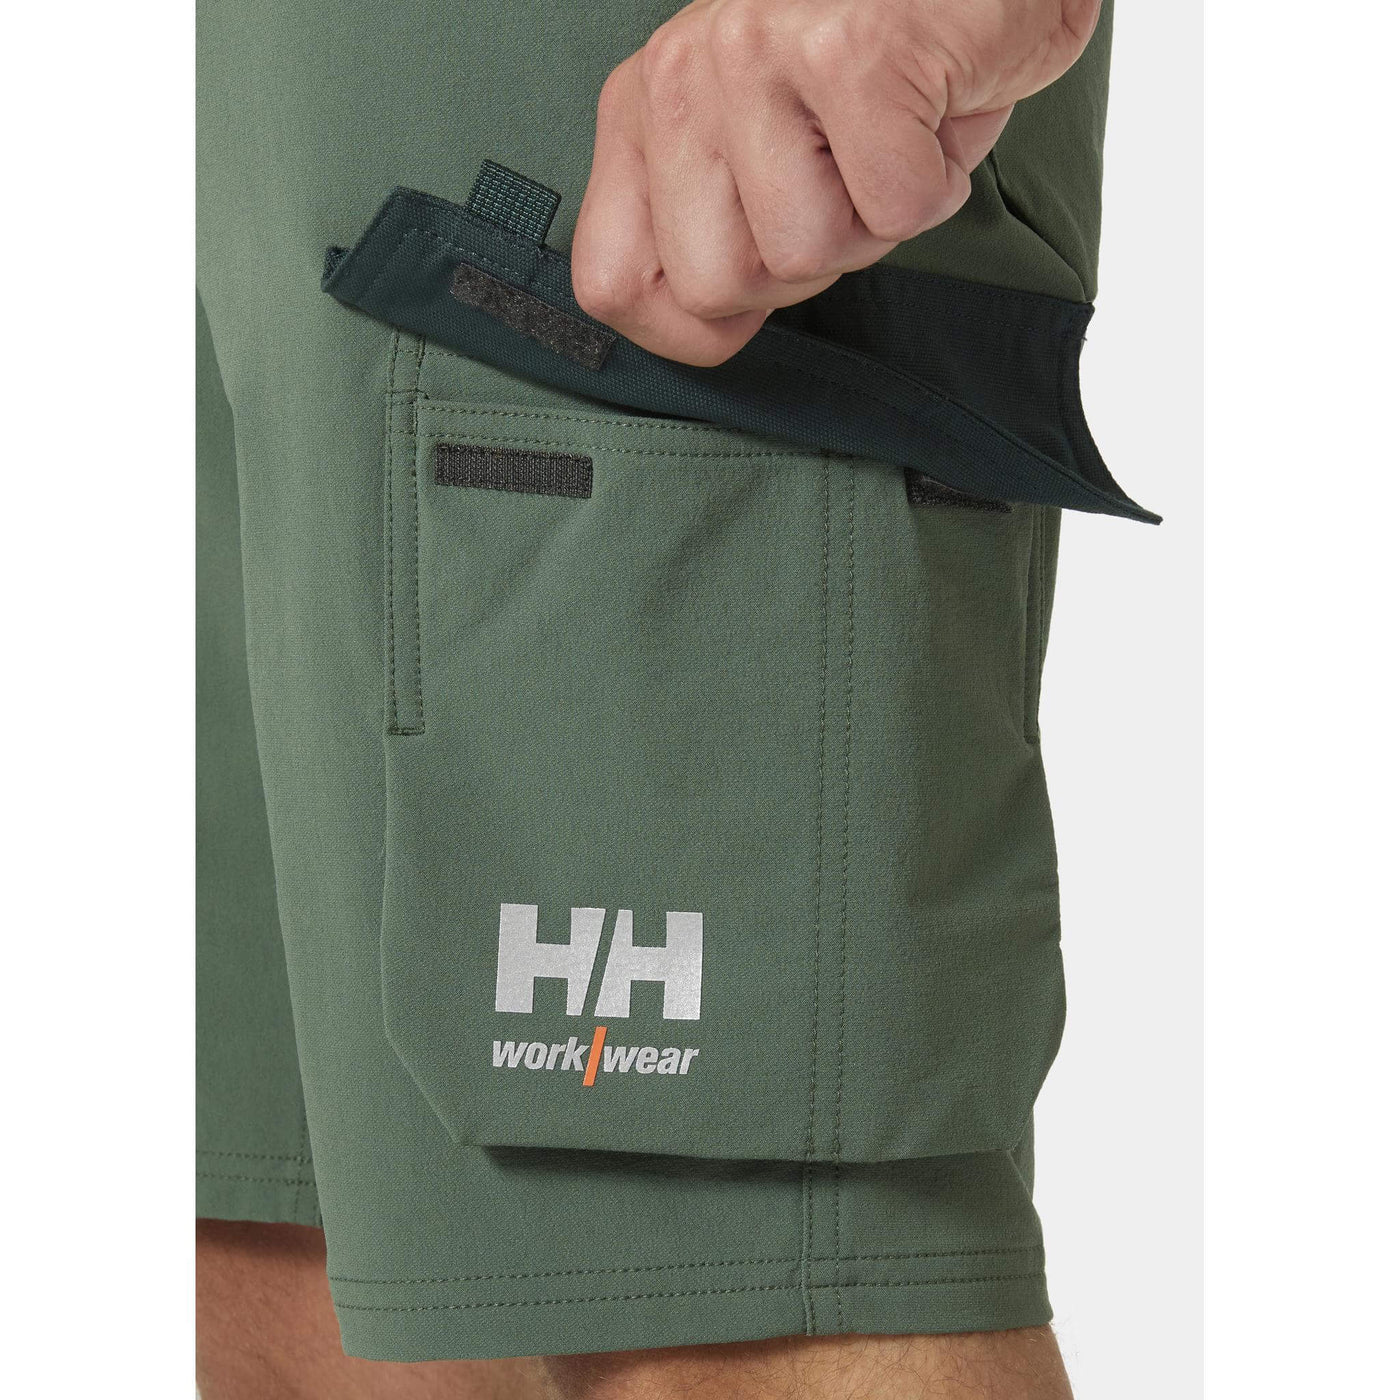 Helly Hansen Oxford 4X Lightweight 4-Way-Stretch Cargo Shorts Spruce/Darkest Spruce Feature 1#colour_spruce-darkest-spruce